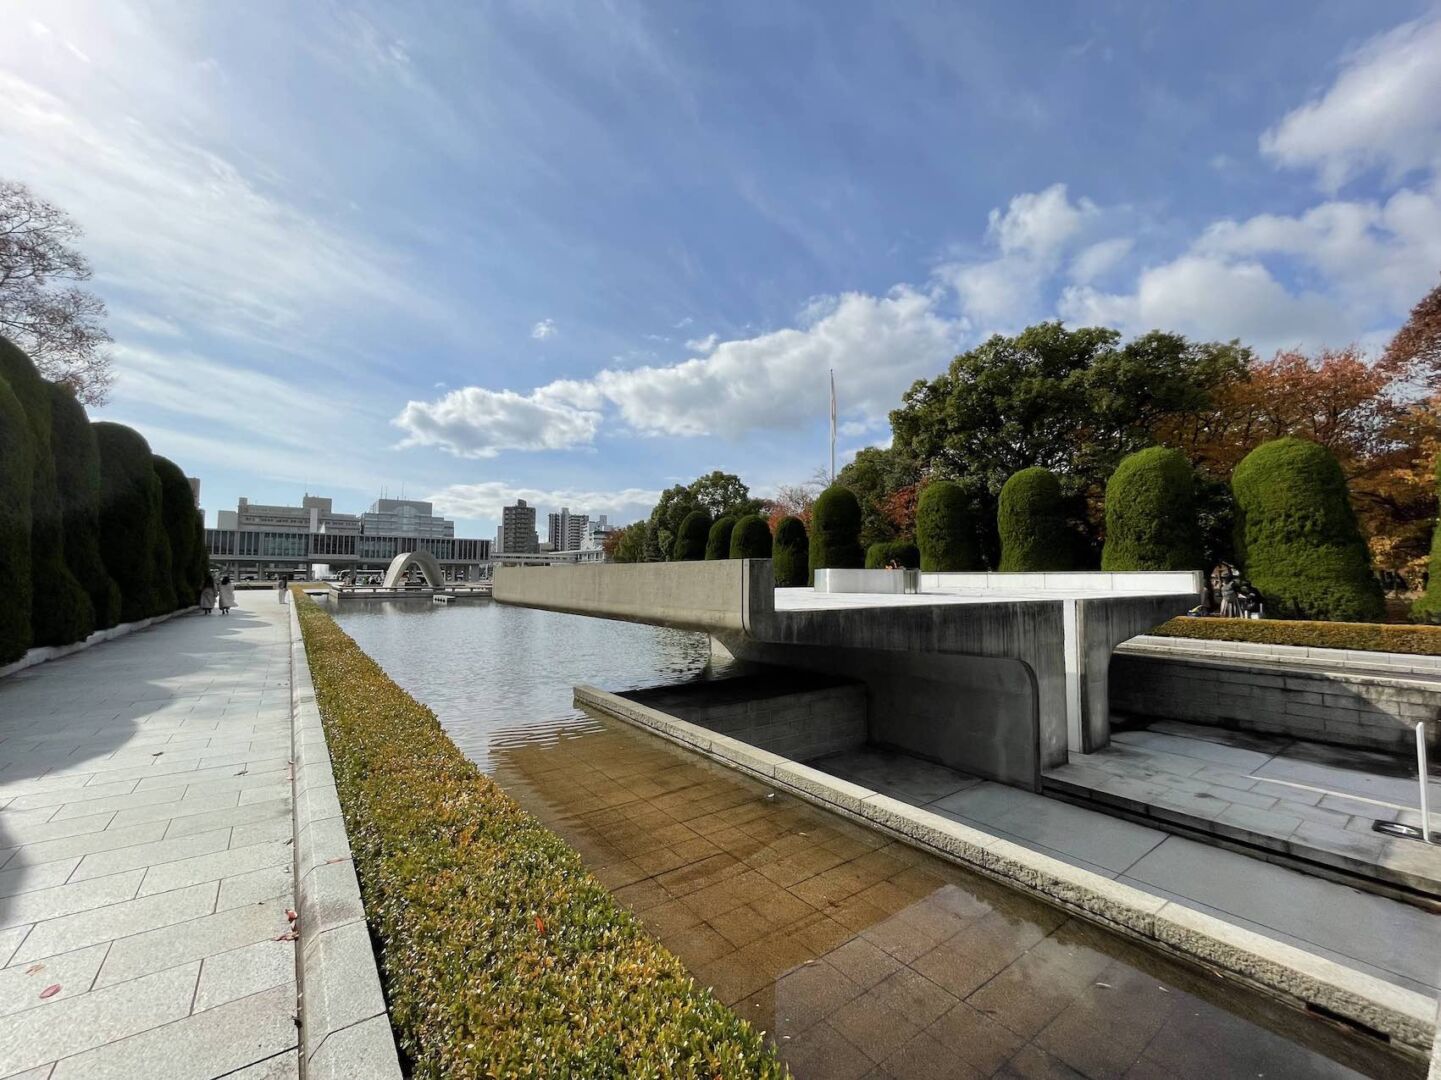 No parque da paz em Hiroshima. O céu está azul com algumas nuvens. Na foto, a chama da paz no canto direito e o museu da paz ao fundo.